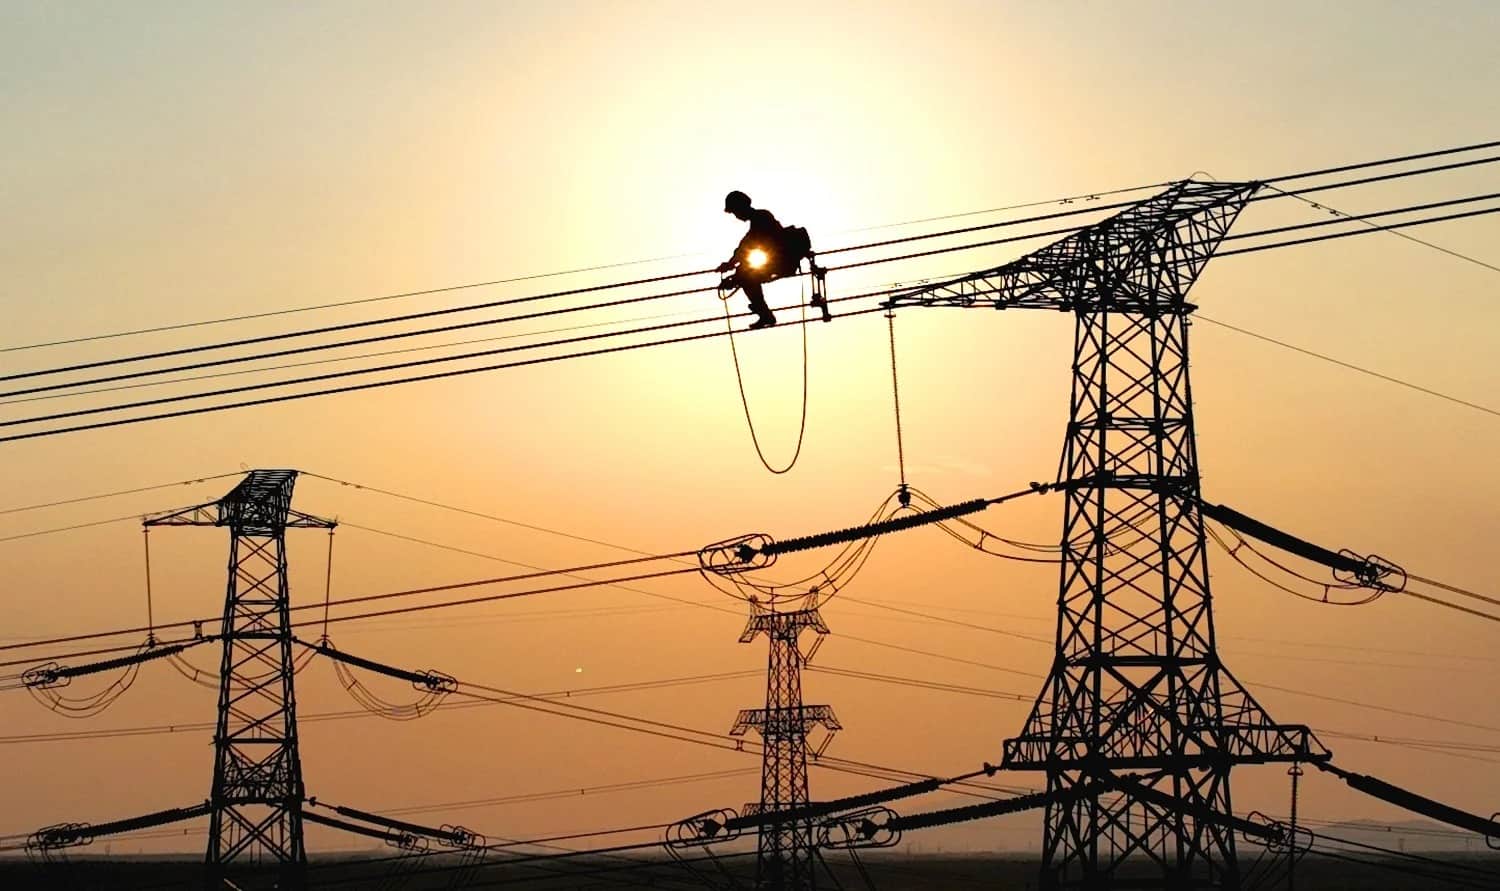 عامل كهرباء يُجري أعمال الصيانة على أسلاك الكهرباء لمشروع خطوط الطاقة ذات الجهد العالي في مدينة ليانيونغانغ الصينية في 28 سبتمبر/ أيلول عام 2022. جينغ يوهي/ في سي جي عن طريق موقع جيتي إميدجيز